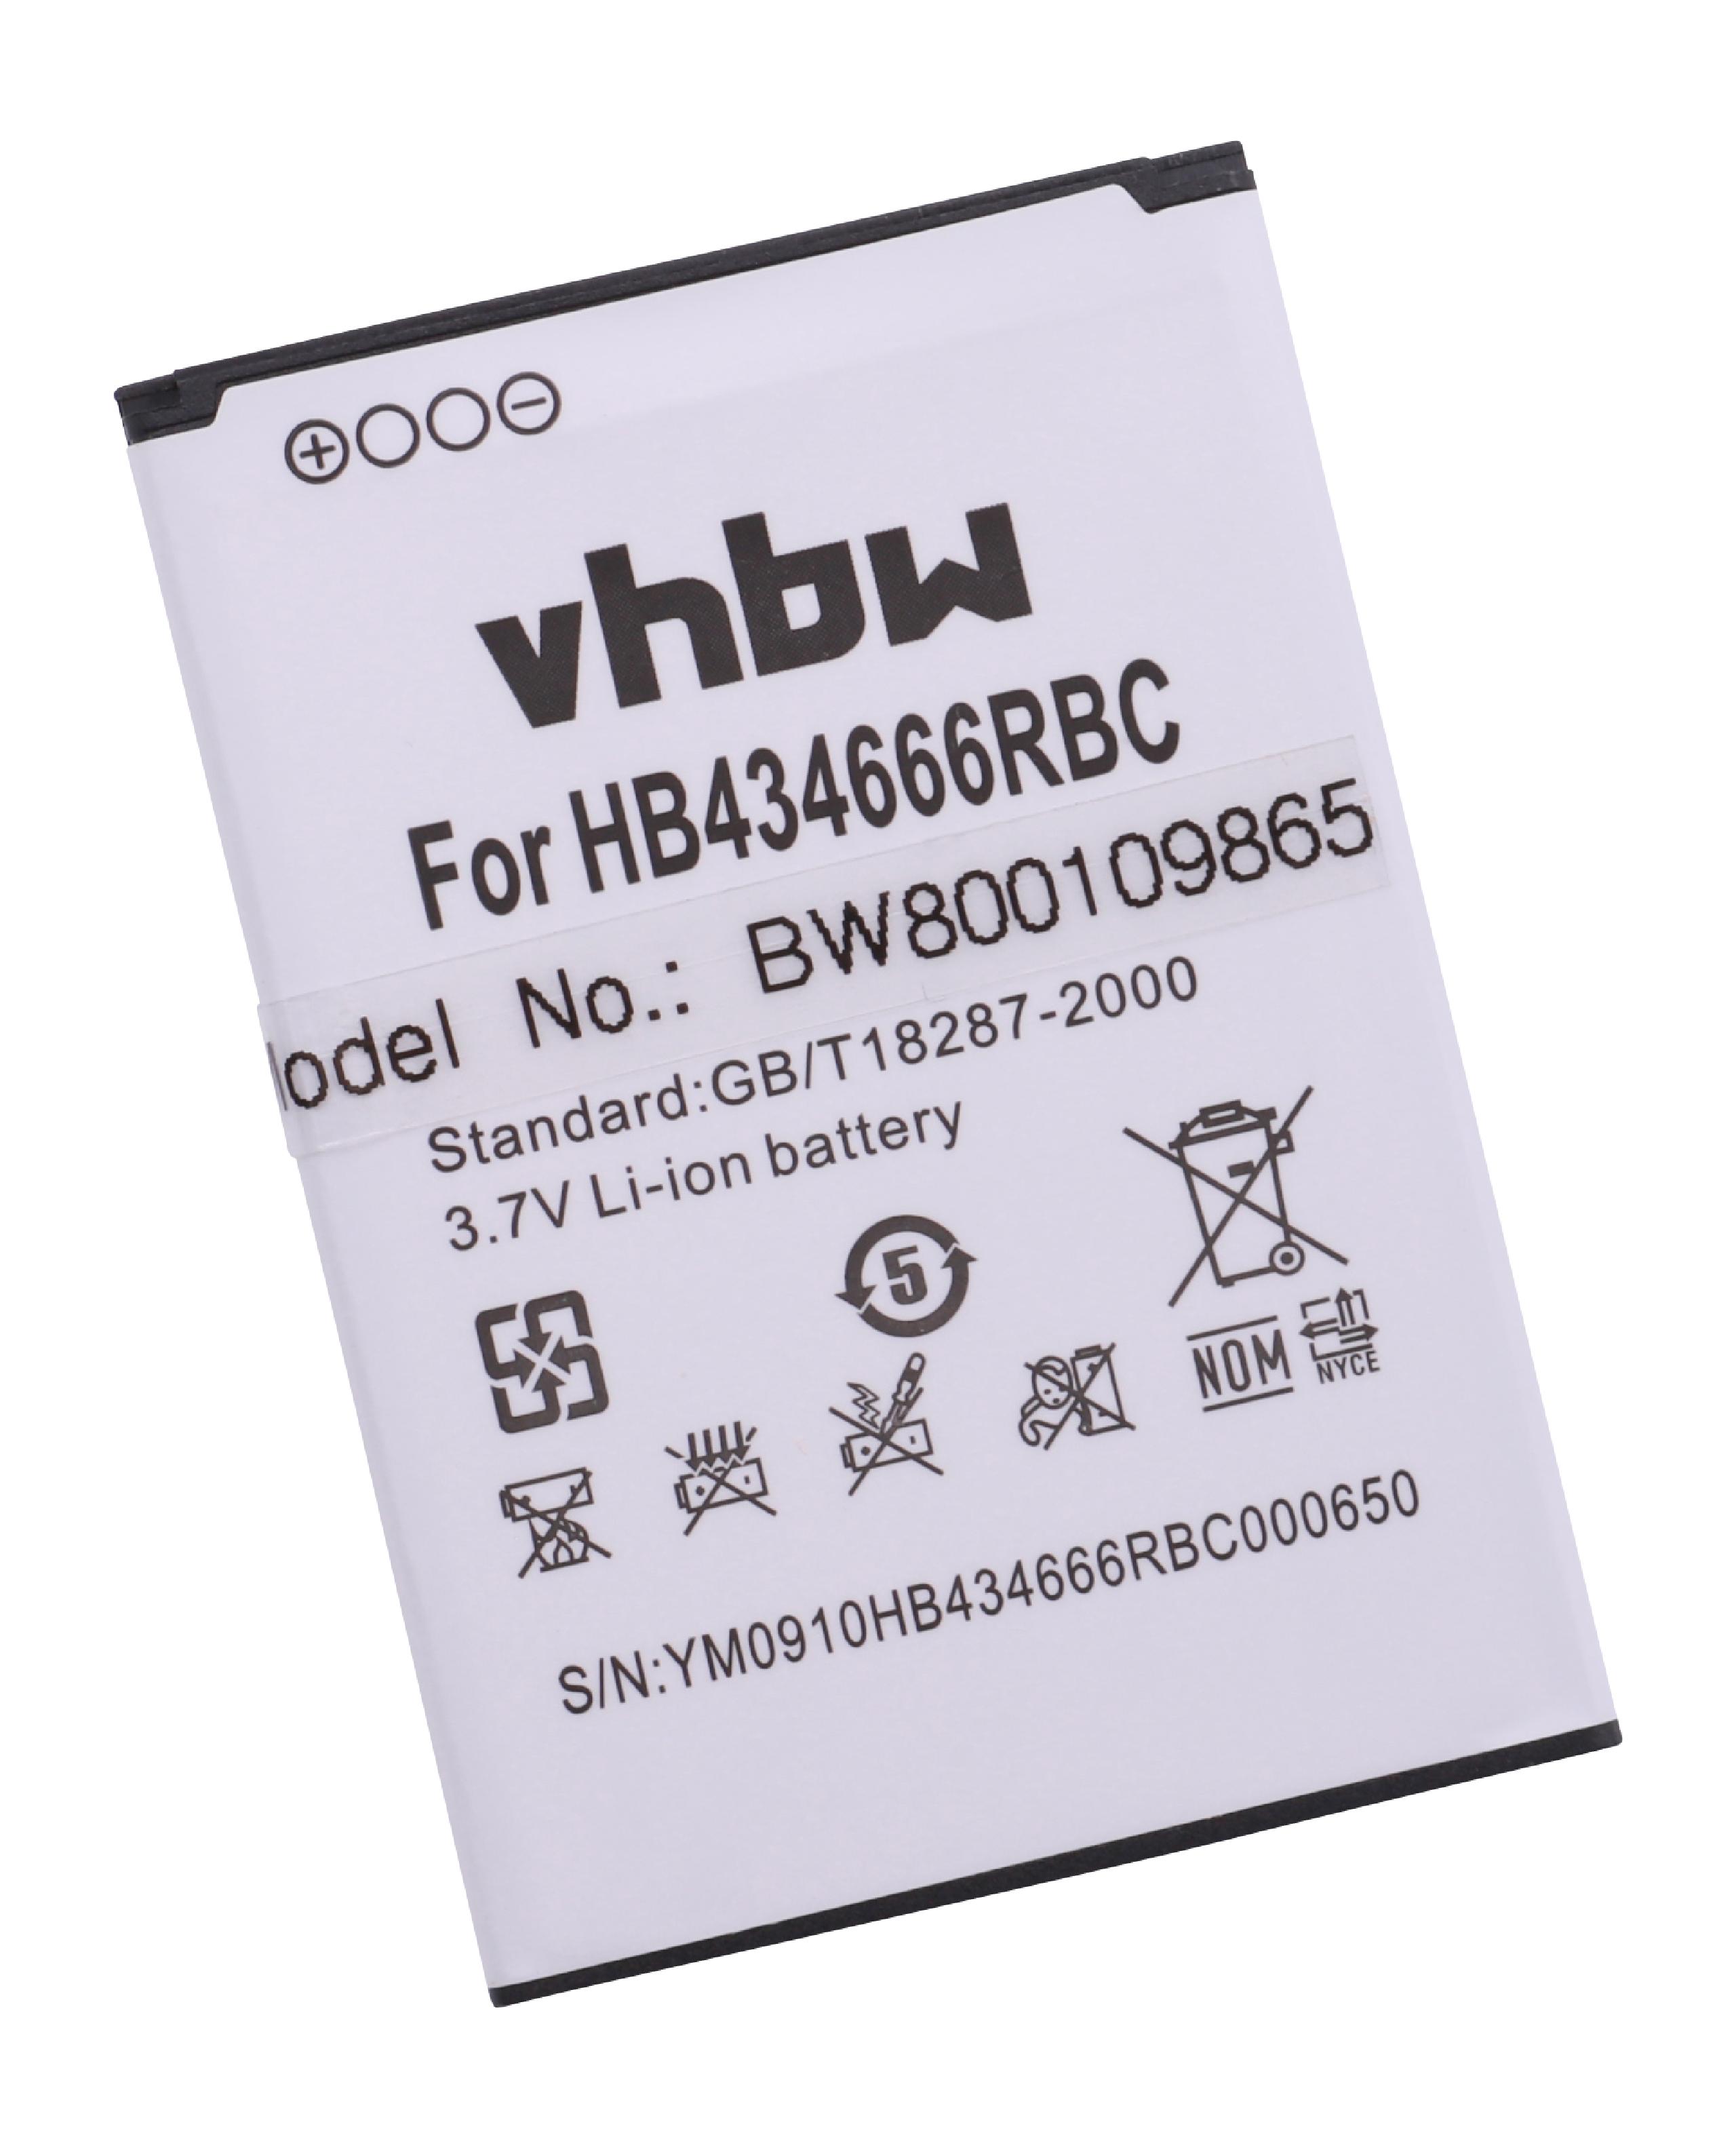 Akumulator do mobilnego routera / modemu WiFi zamiennik Huawei HB434666RAW - 1500 mAh 3,7 V Li-Ion